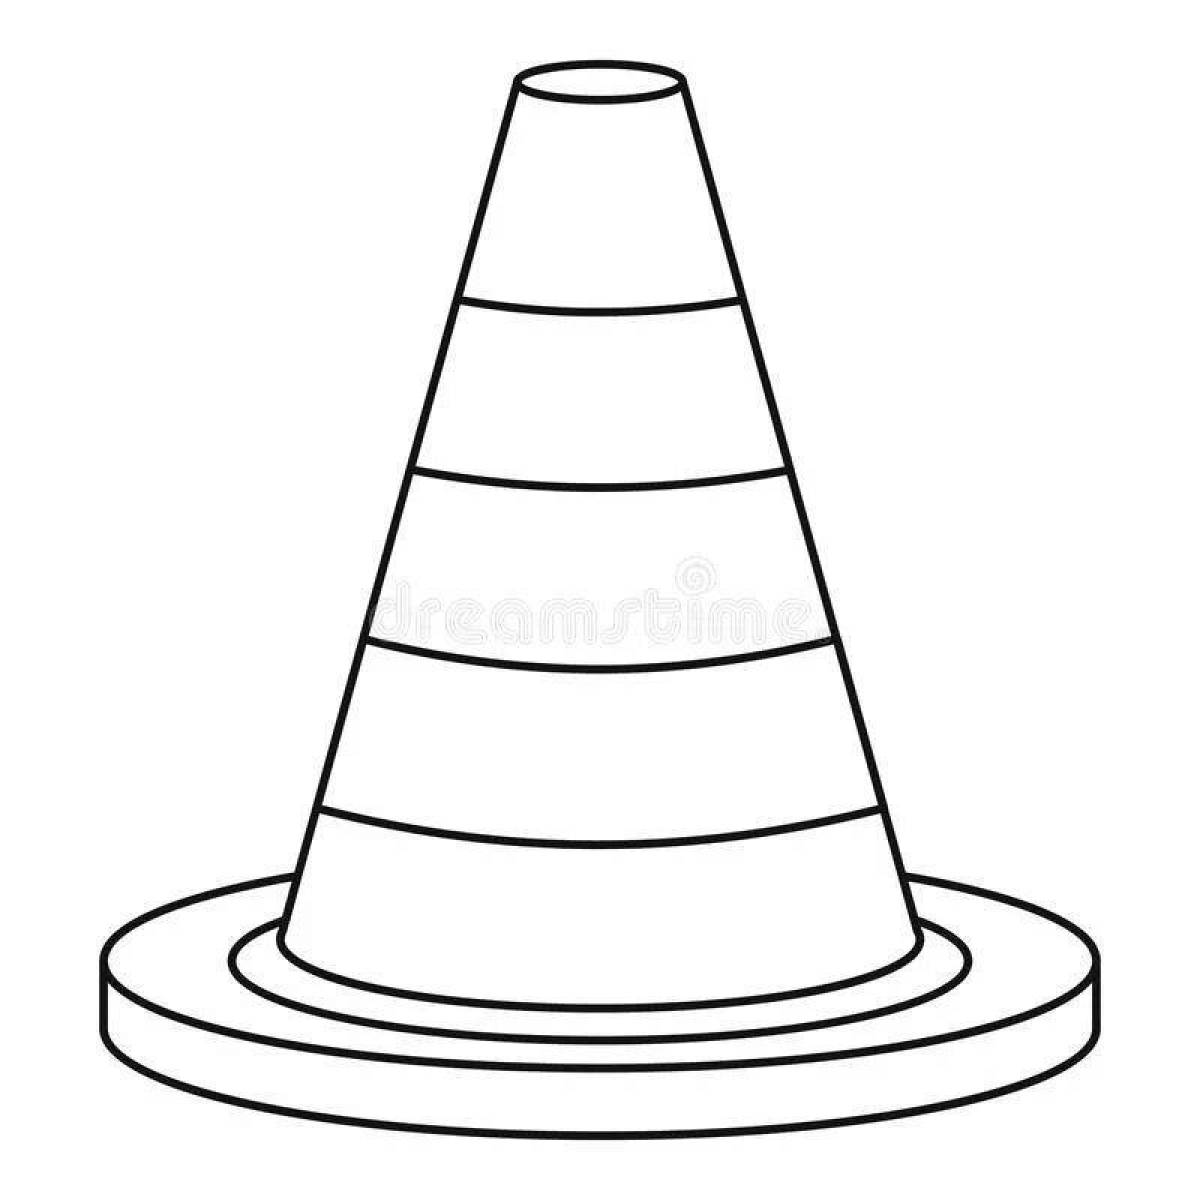 Traffic cones #7